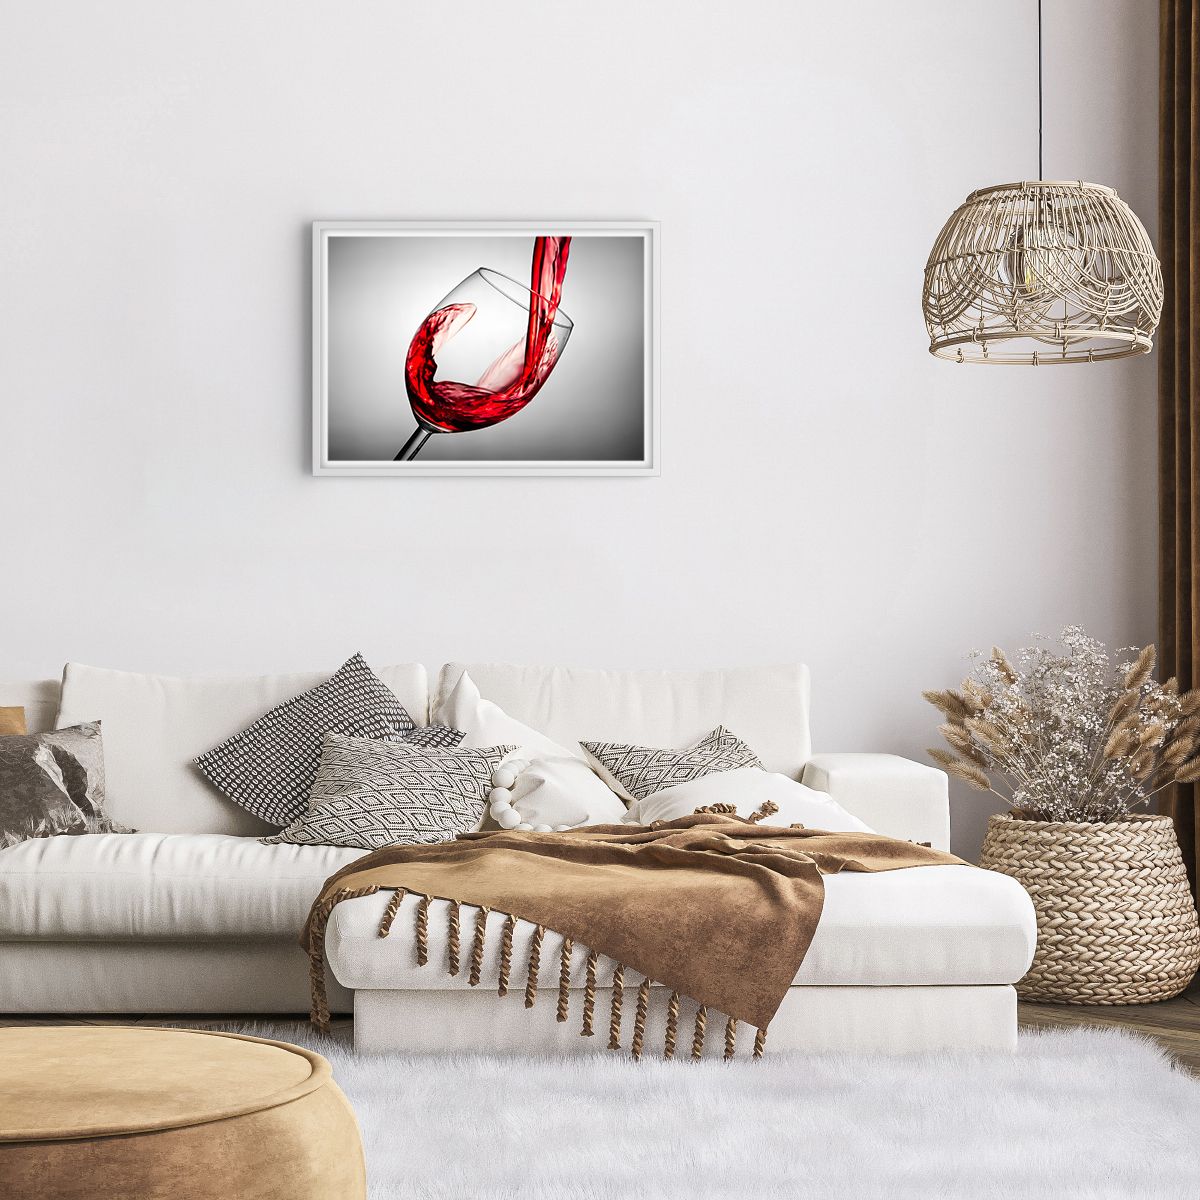 Affiche dans un cadre blanc Verre De Vin, Affiche dans un cadre blanc Vin Rouge, Affiche dans un cadre blanc La Gastronomie, Affiche dans un cadre blanc Jeu, Affiche dans un cadre blanc Pain Grillé